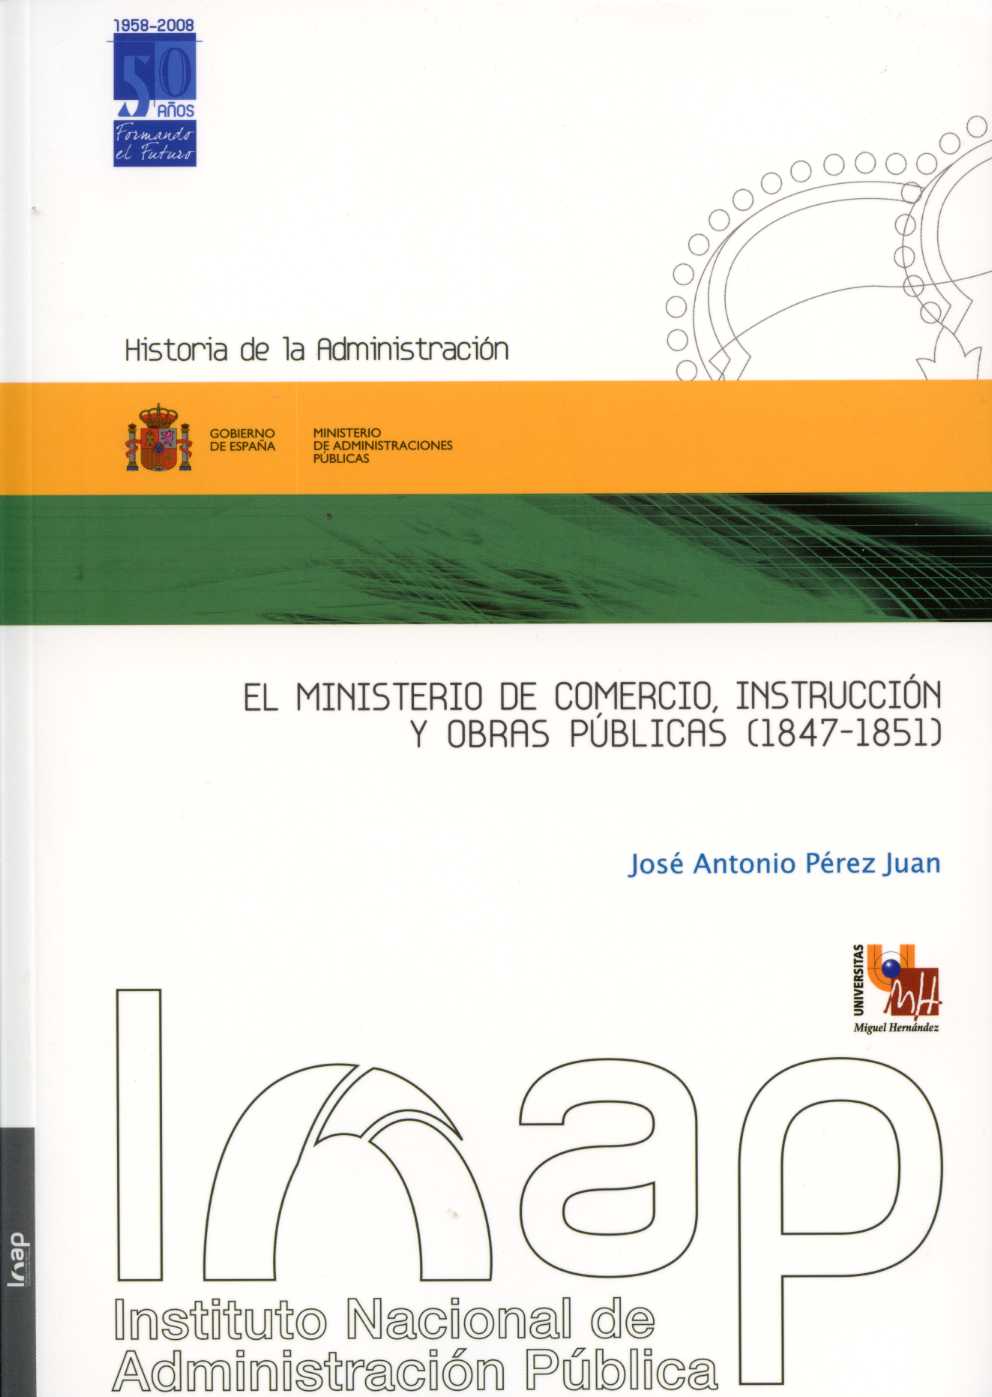 Ministerio de Comercio, Instrucción y Obras Públicas, El. (1847-1851).-0